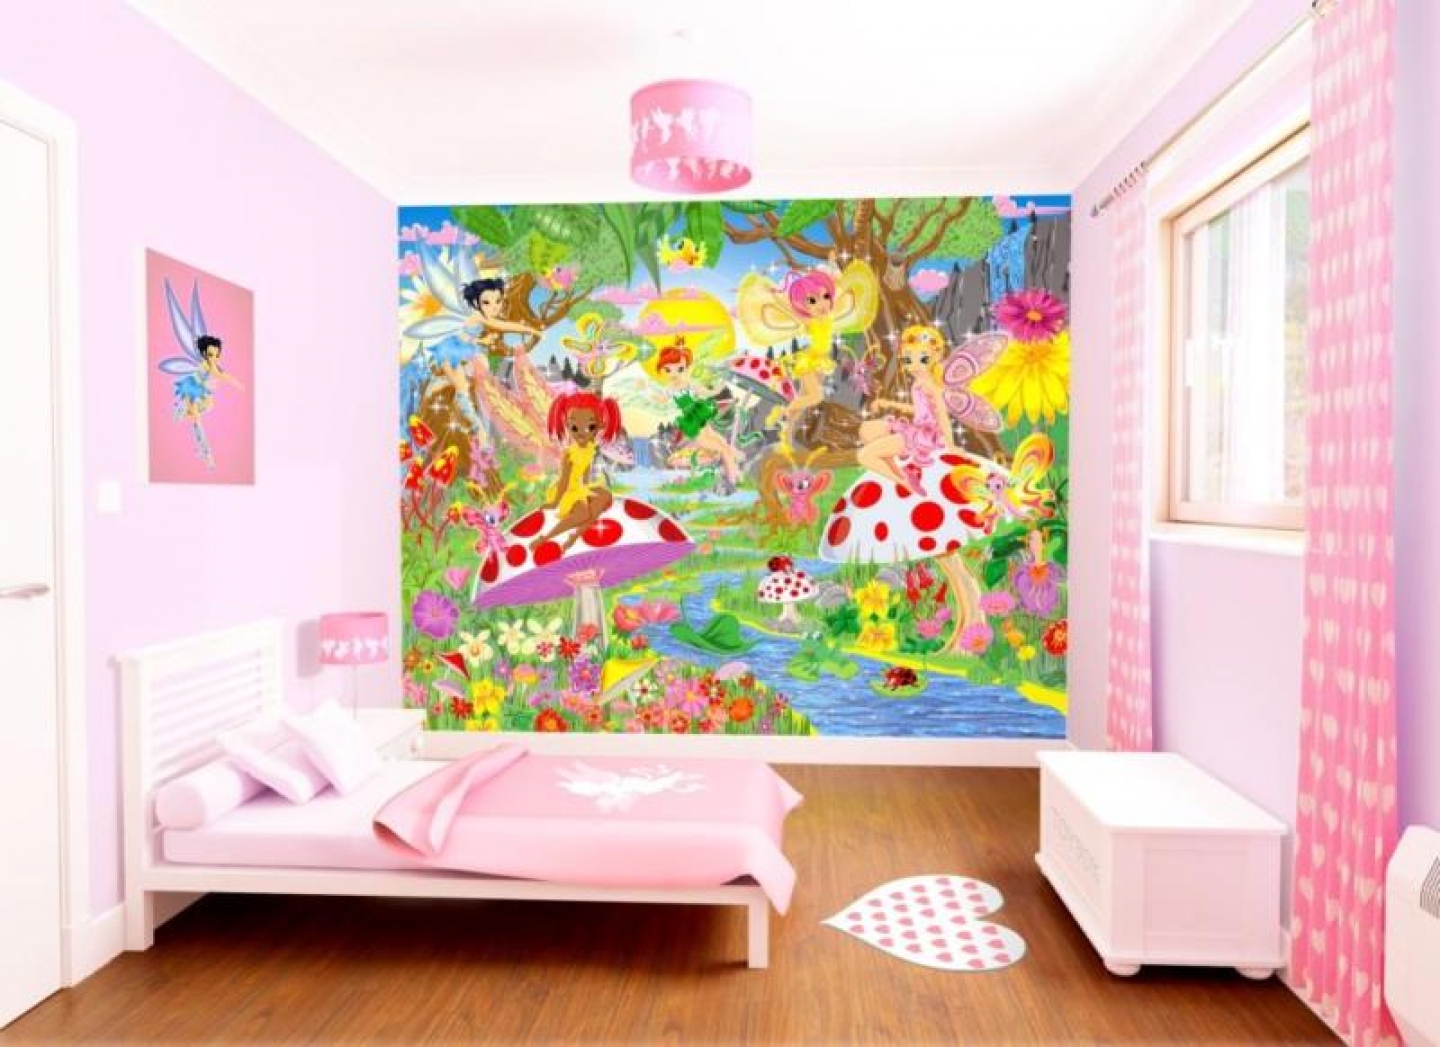 Design For Houses Children S Bedroom Wallpaper Murals Designs